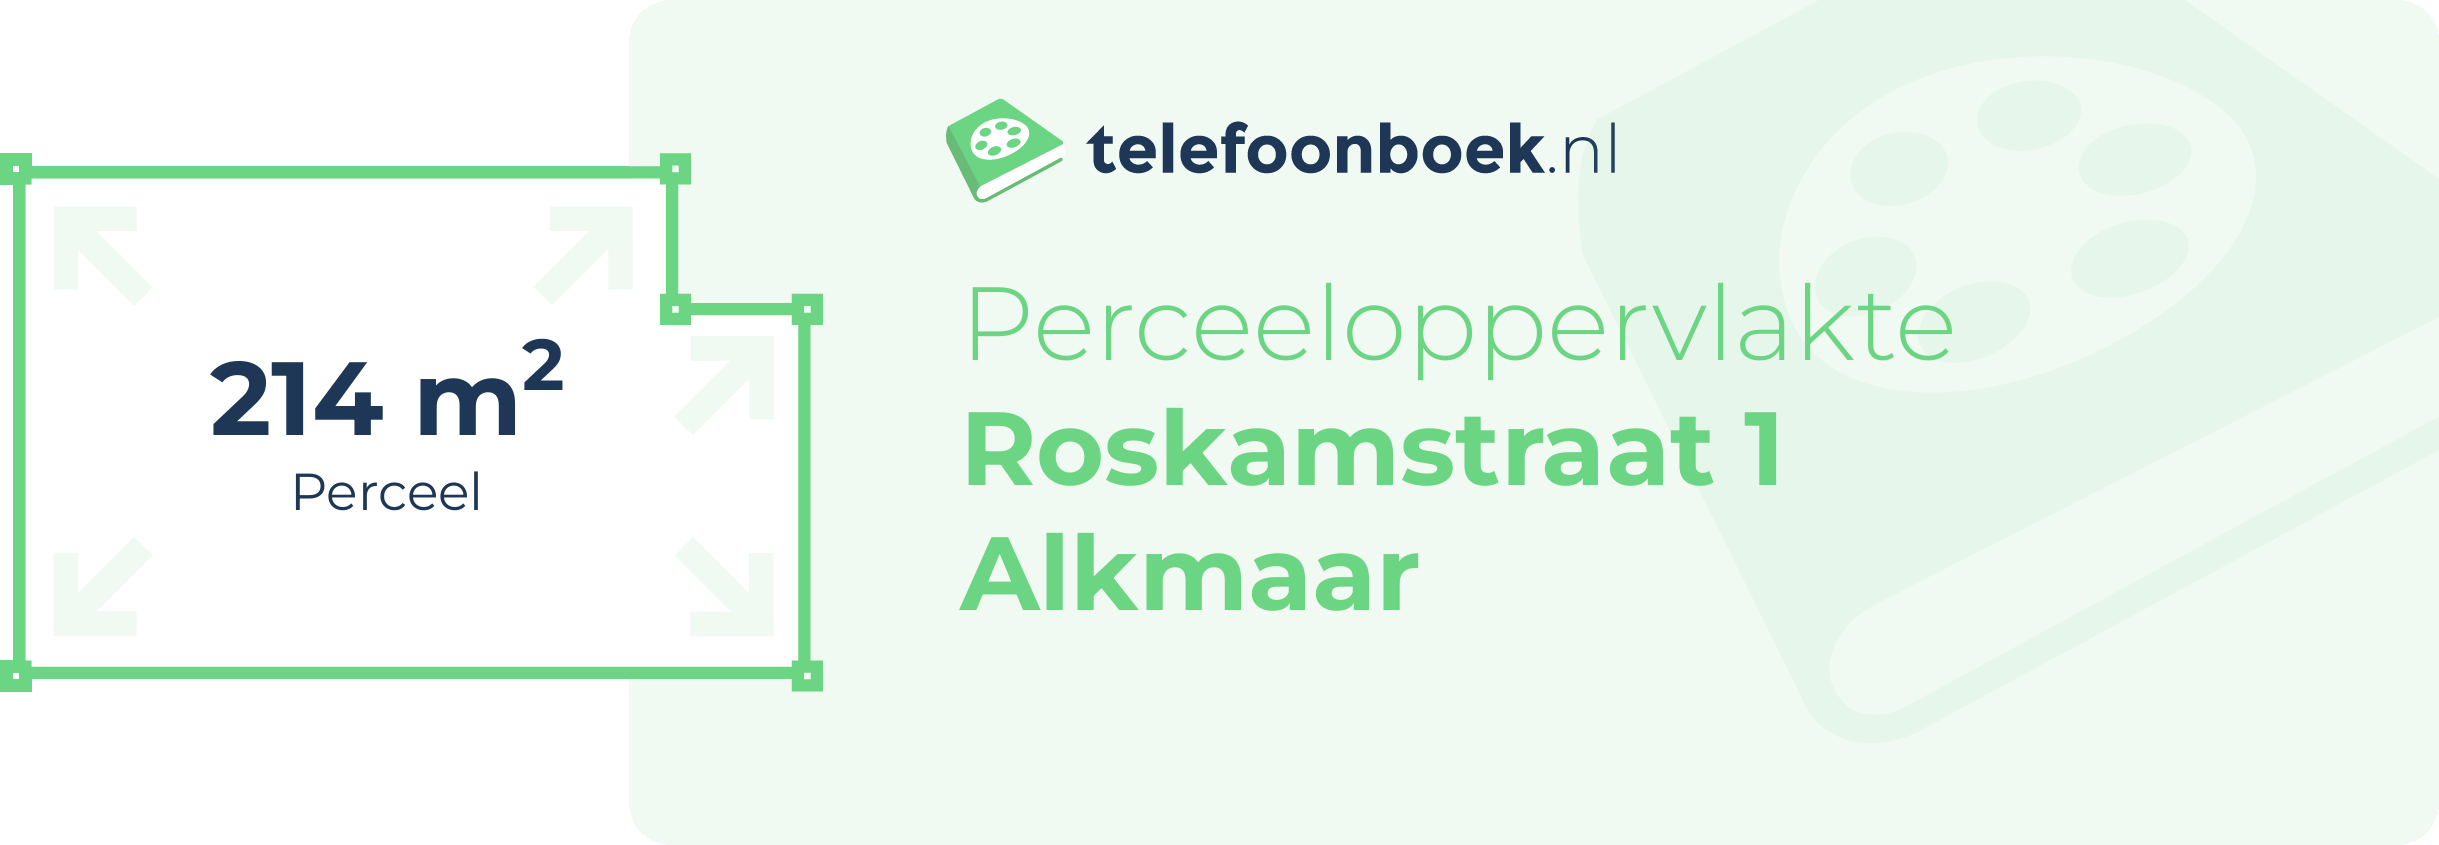 Perceeloppervlakte Roskamstraat 1 Alkmaar